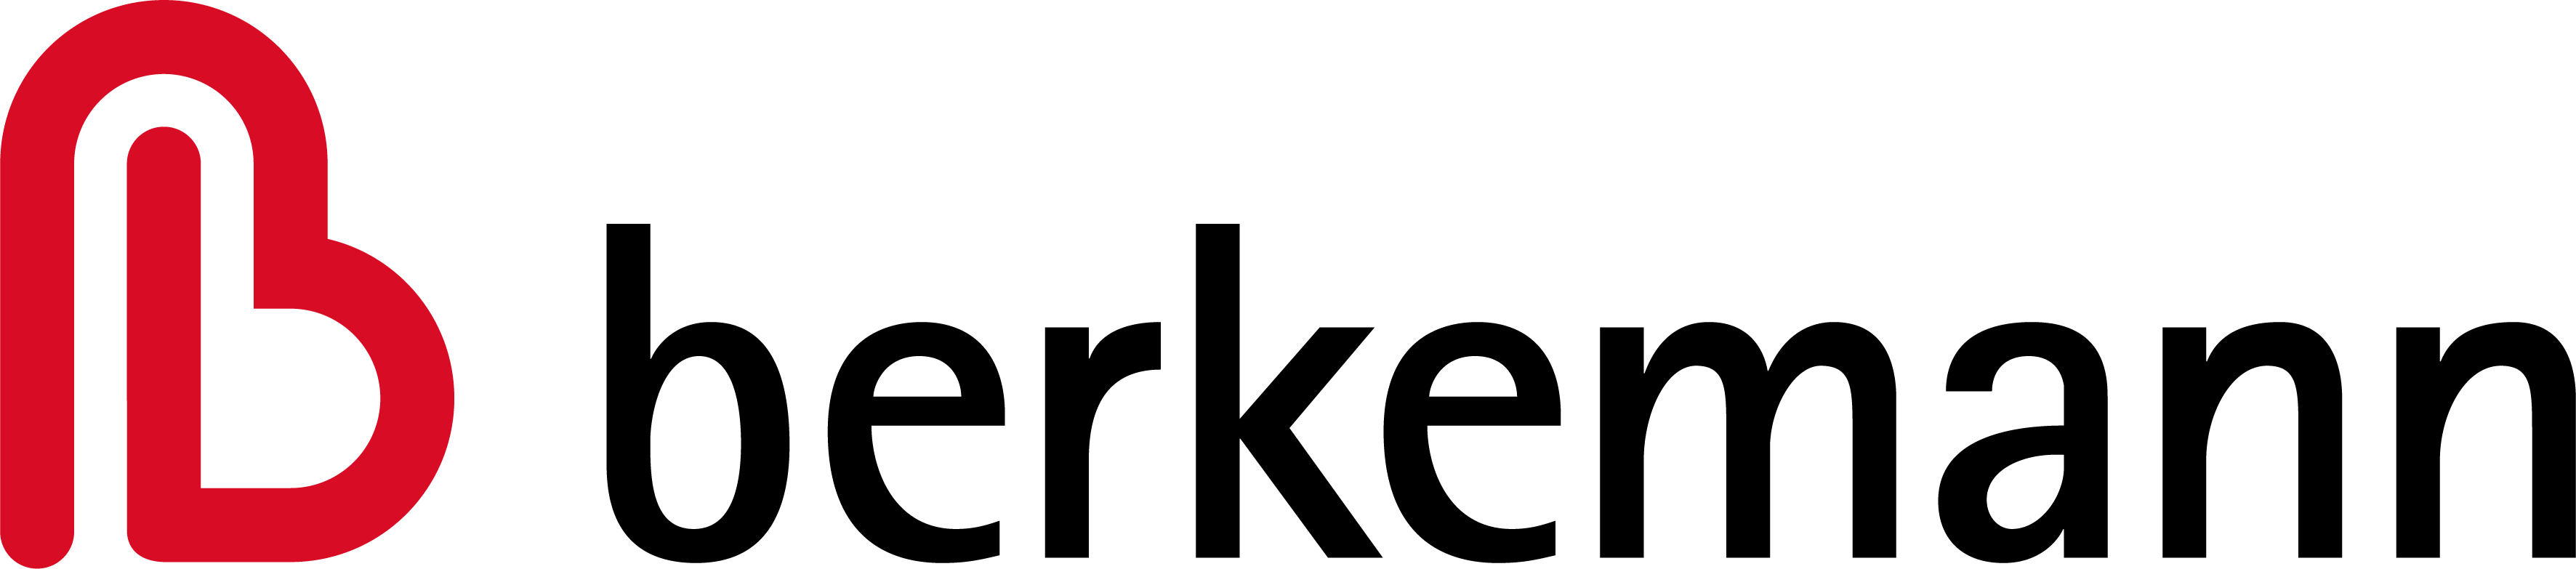 Berkemann-Logo